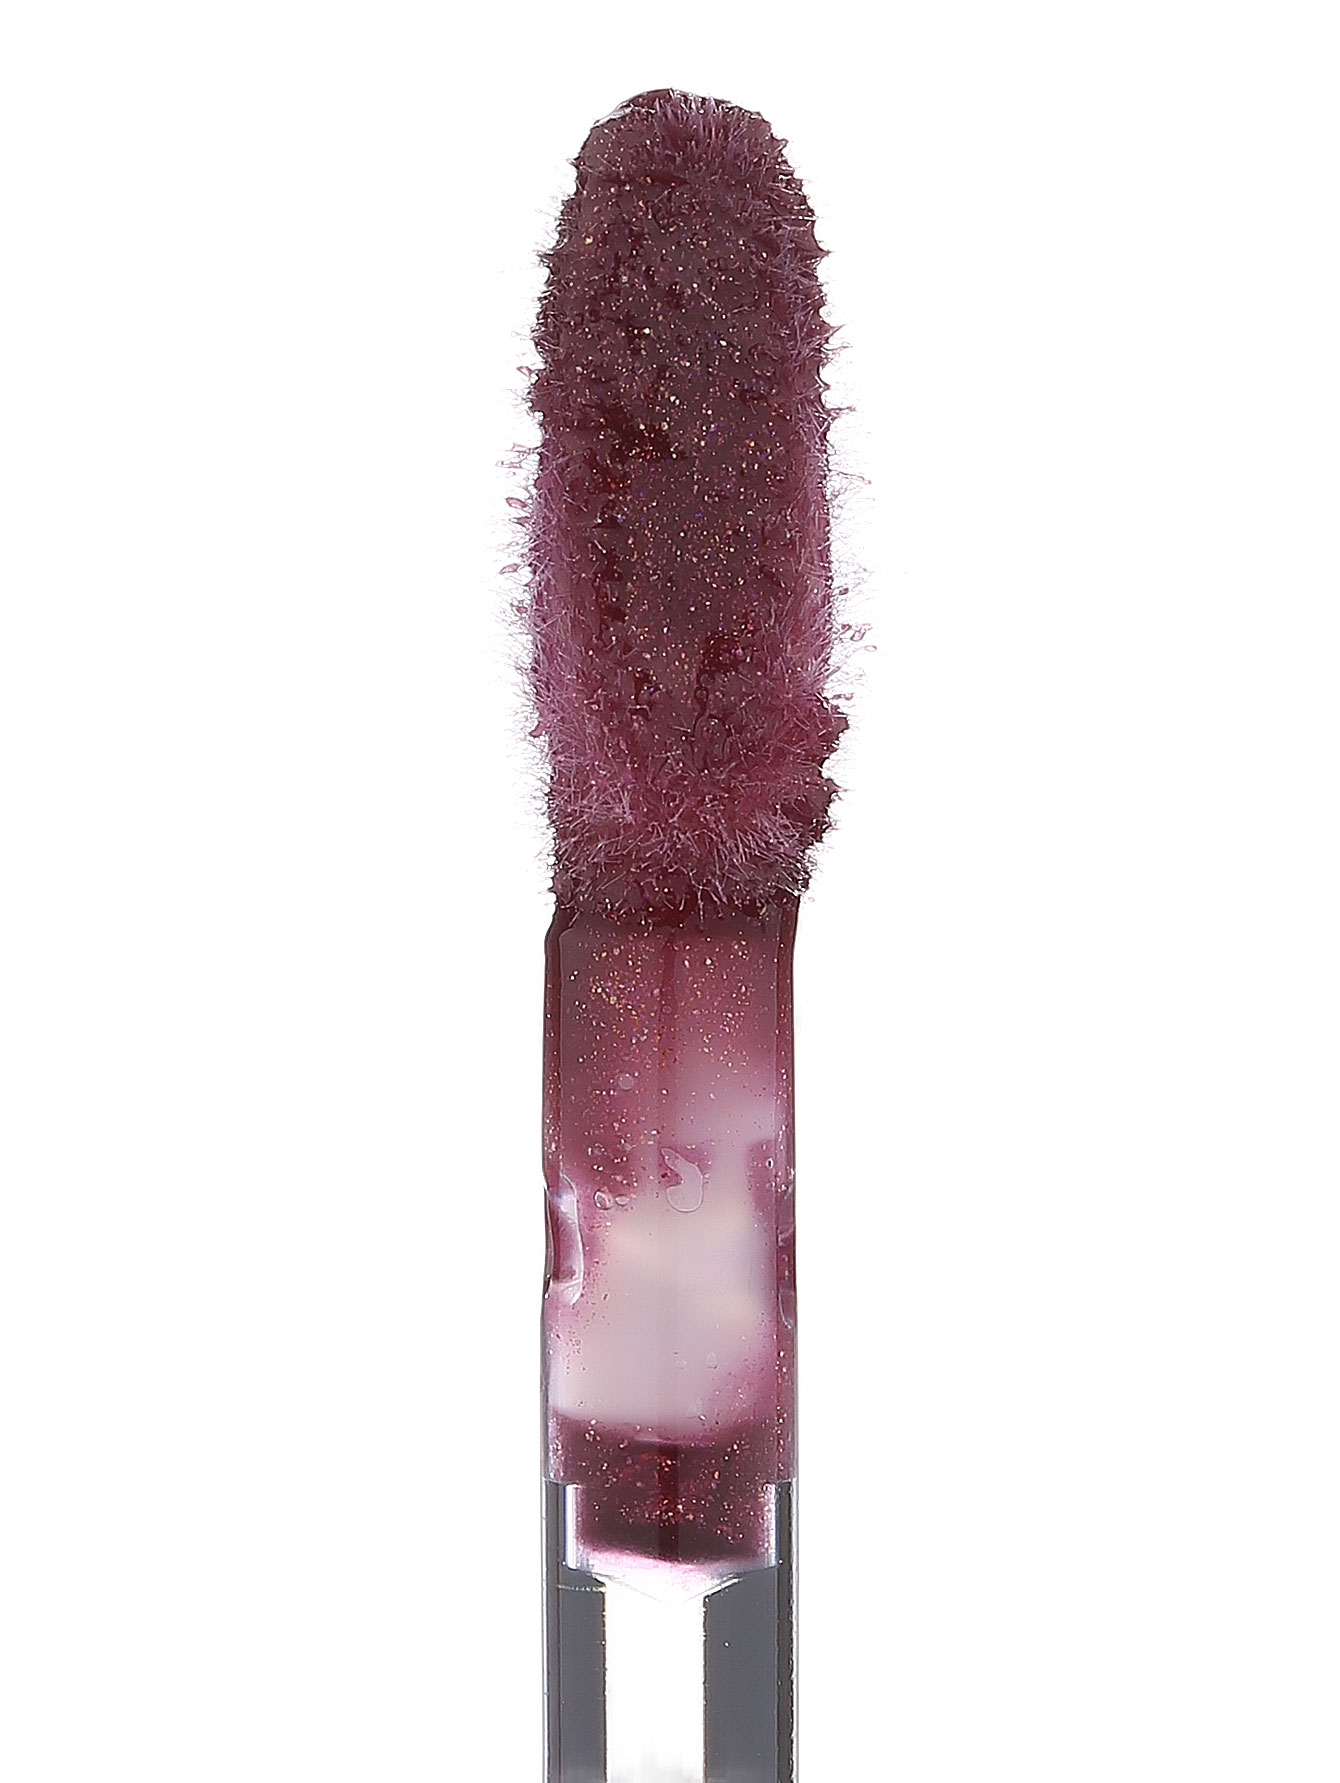  Блеск для губ - №440 Berry Provocative, Pure Color Gloss - Модель Верх-Низ